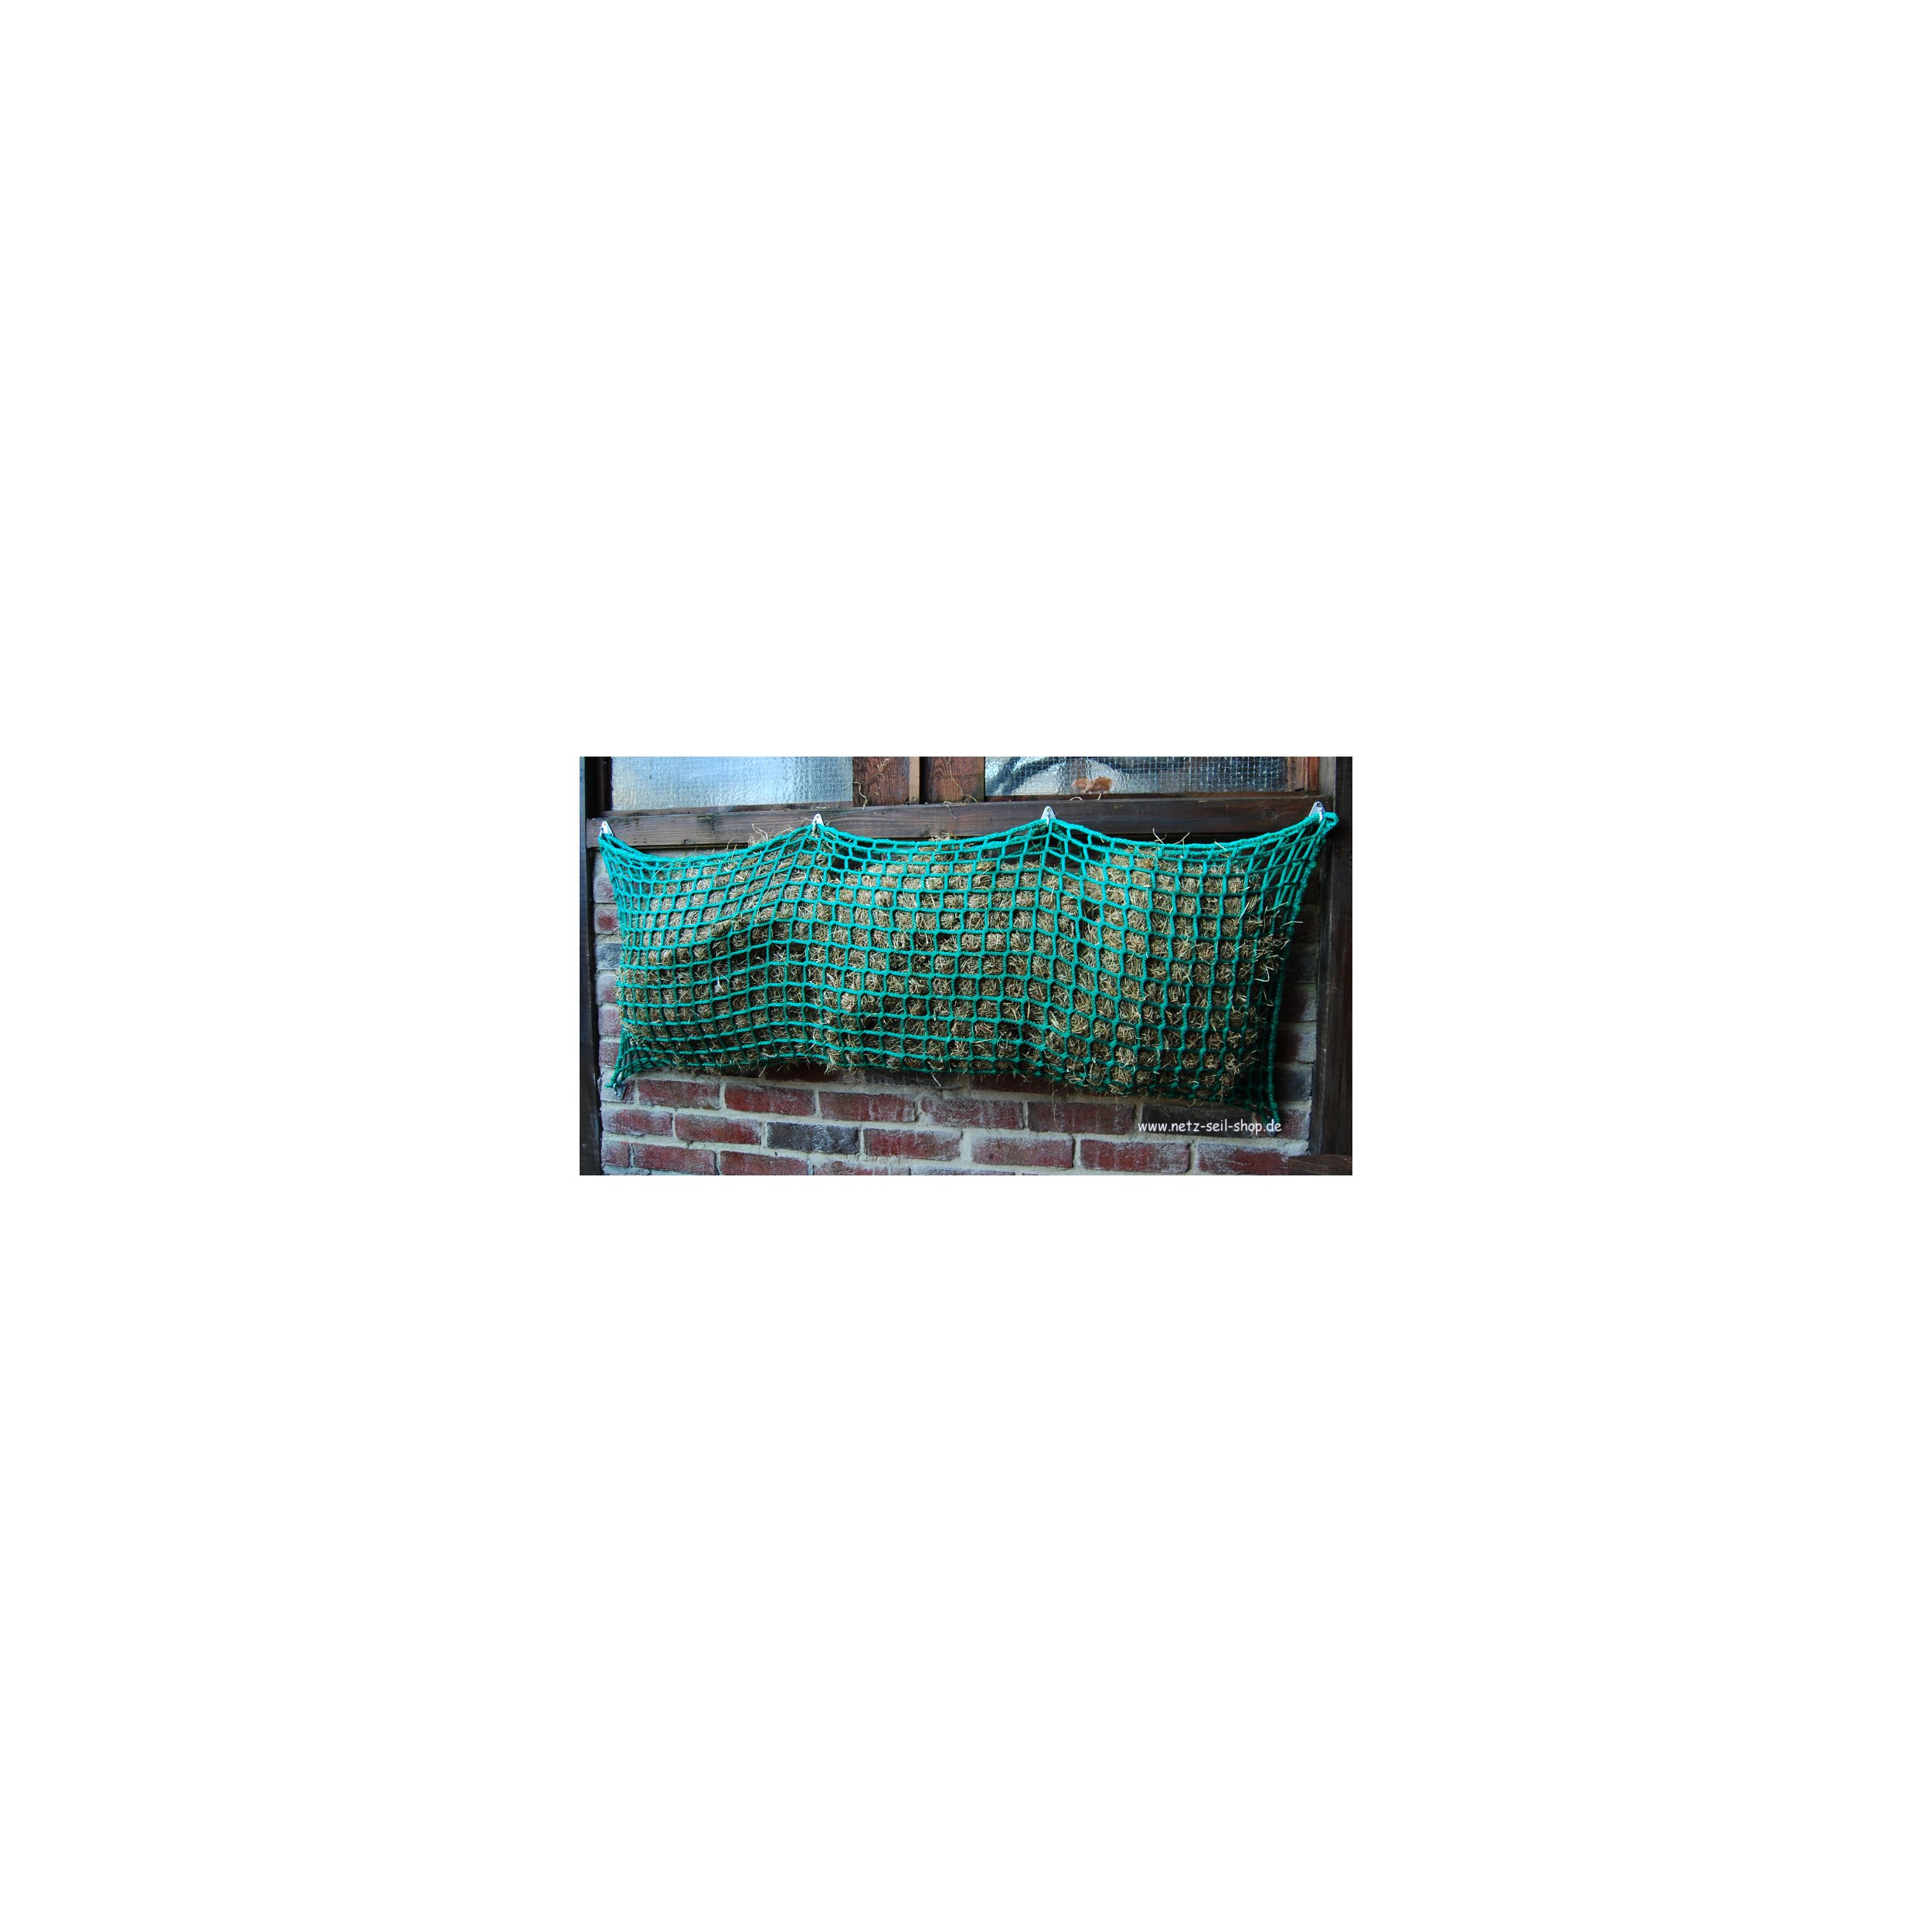 Hooi net in zakvorm, 1,20 m breed, hoogte 0,80 m Ø 5 mm garen dikte, # 30 mm maas